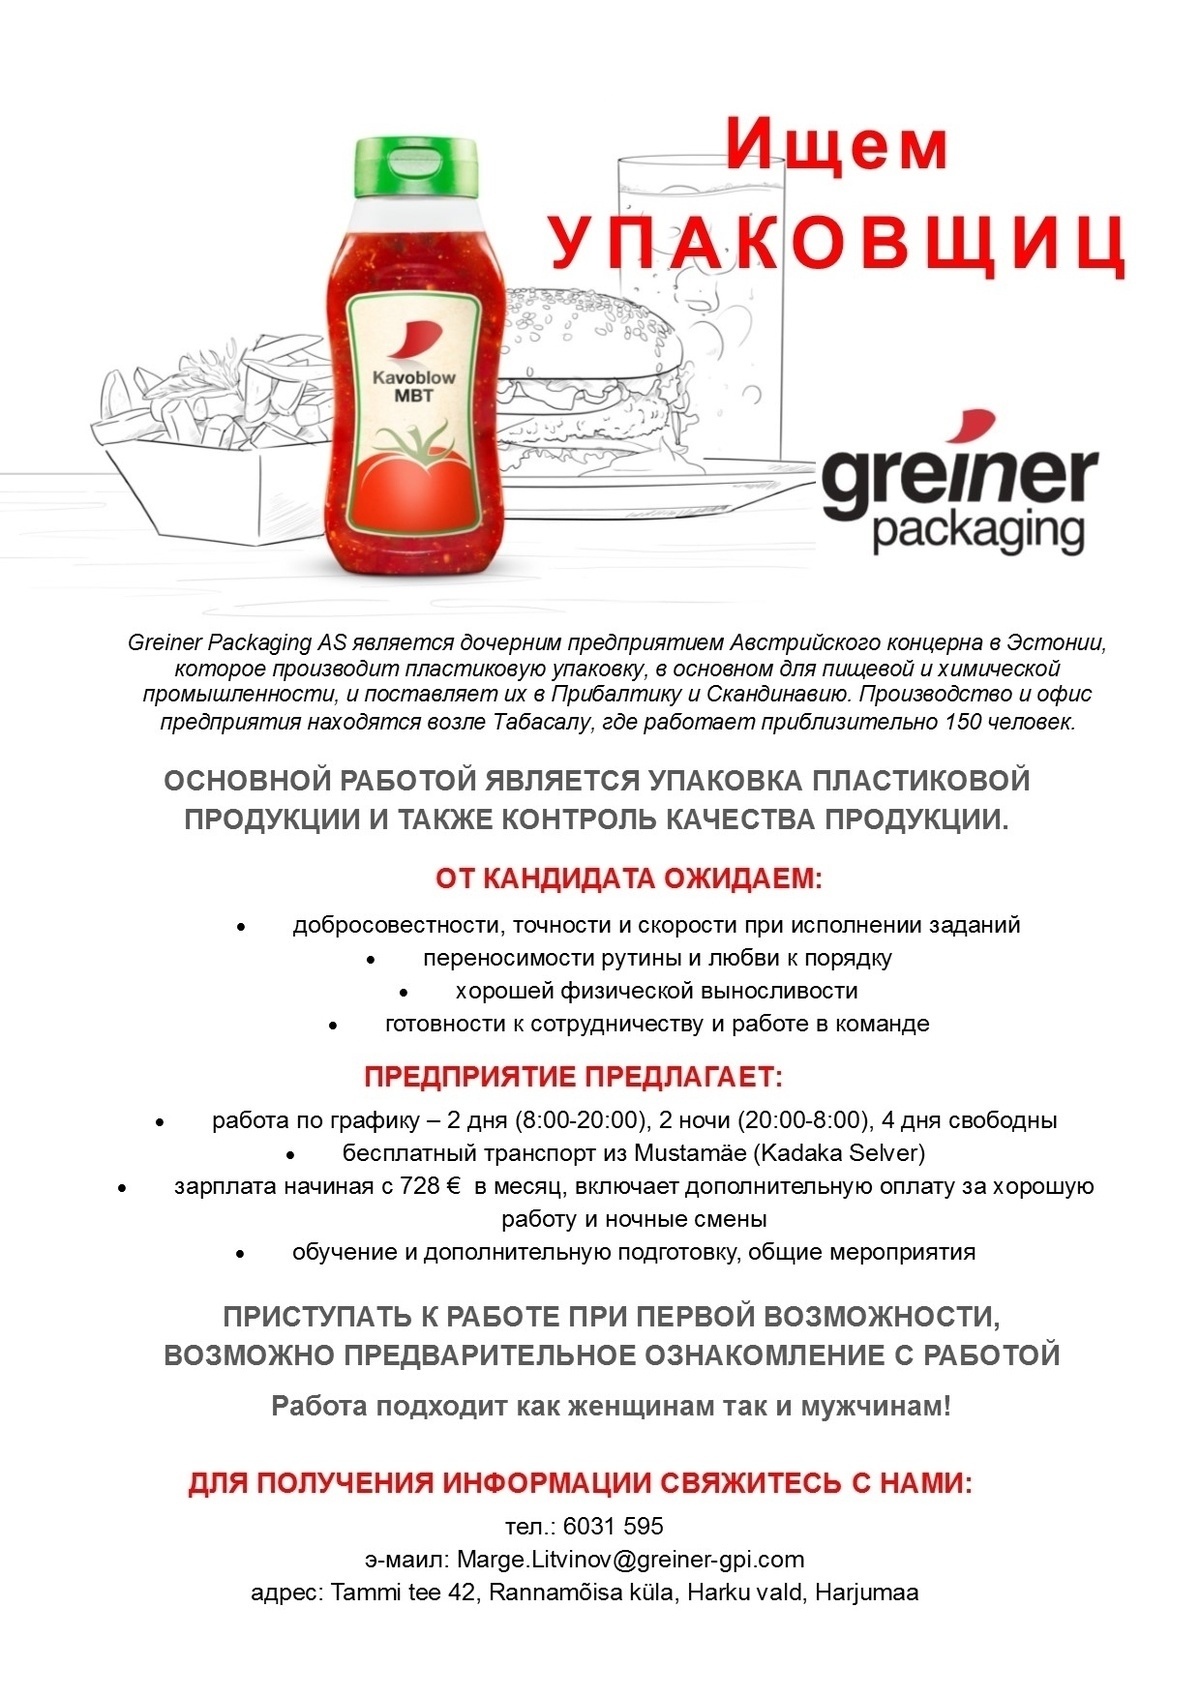 Greiner Packaging AS УПАКОВЩИЦА(-К)